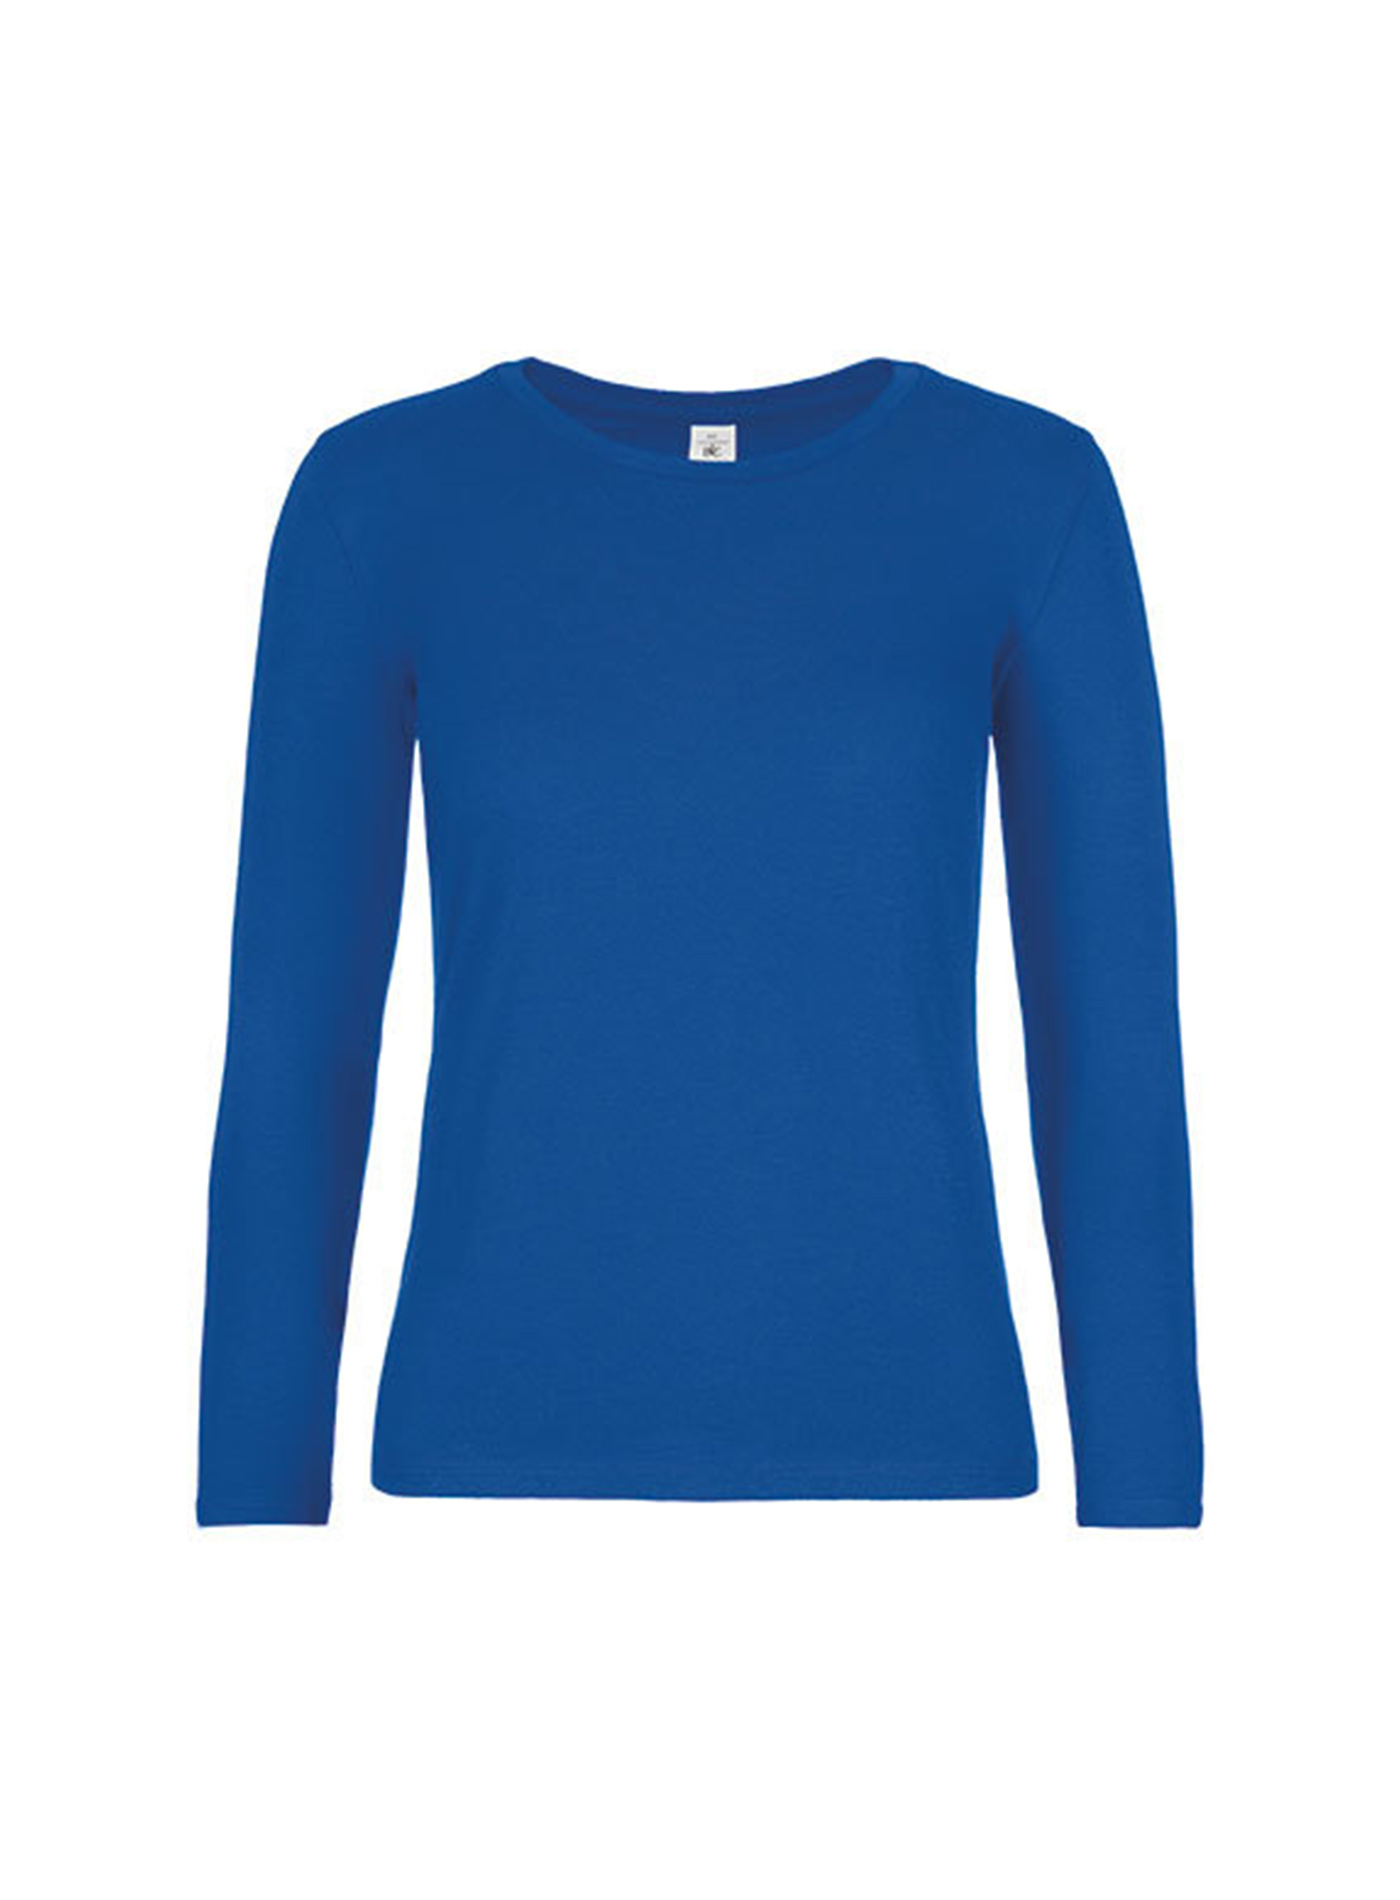 Dámské tričko s dlouhým rukávem B&C Collection - Královská modrá XL